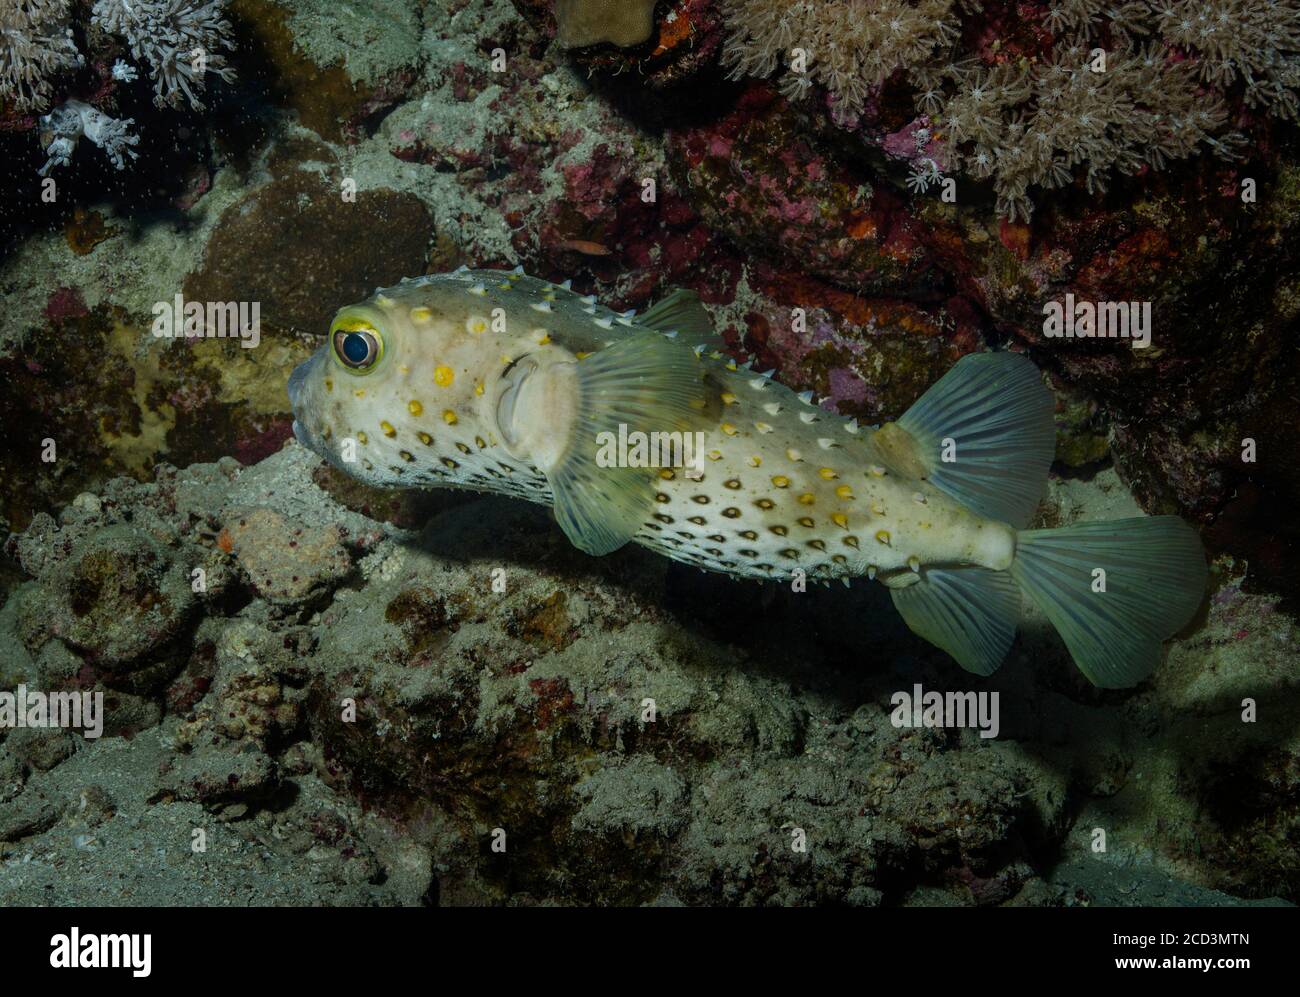 Spotbase burrfish, Cyclichthys spilostylus, on coral reef, Red Sea, Egypt Stock Photo